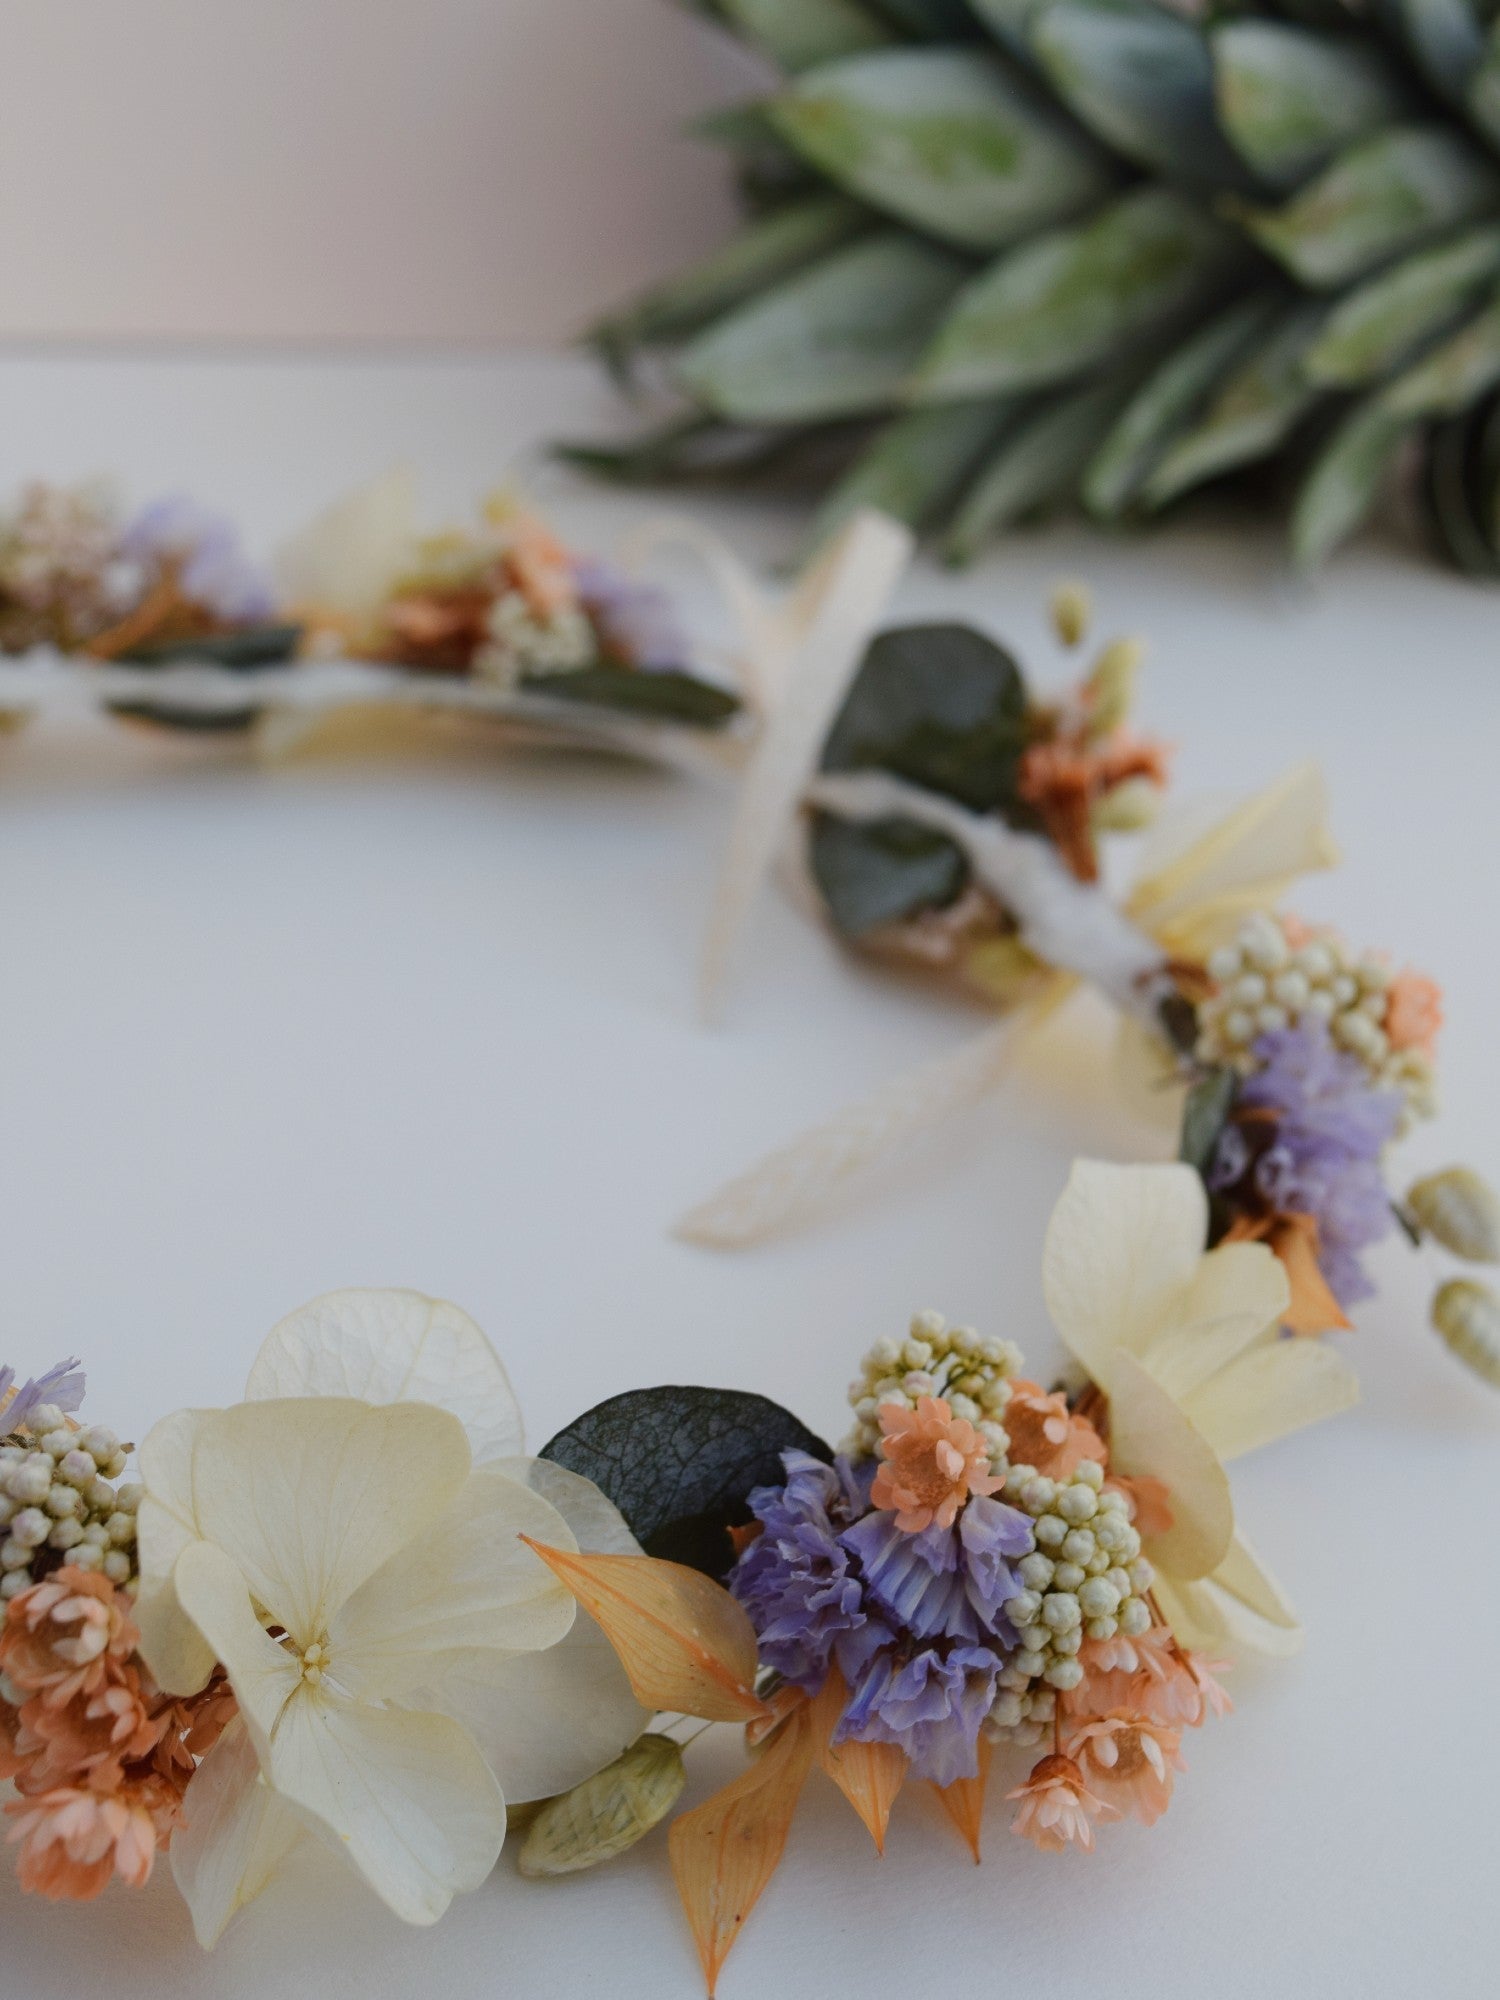 bloemenkroon voor een kind gemaakt van droogbloemen zoals hortensia, eucalyptus en paarse, oranje droogbloemen